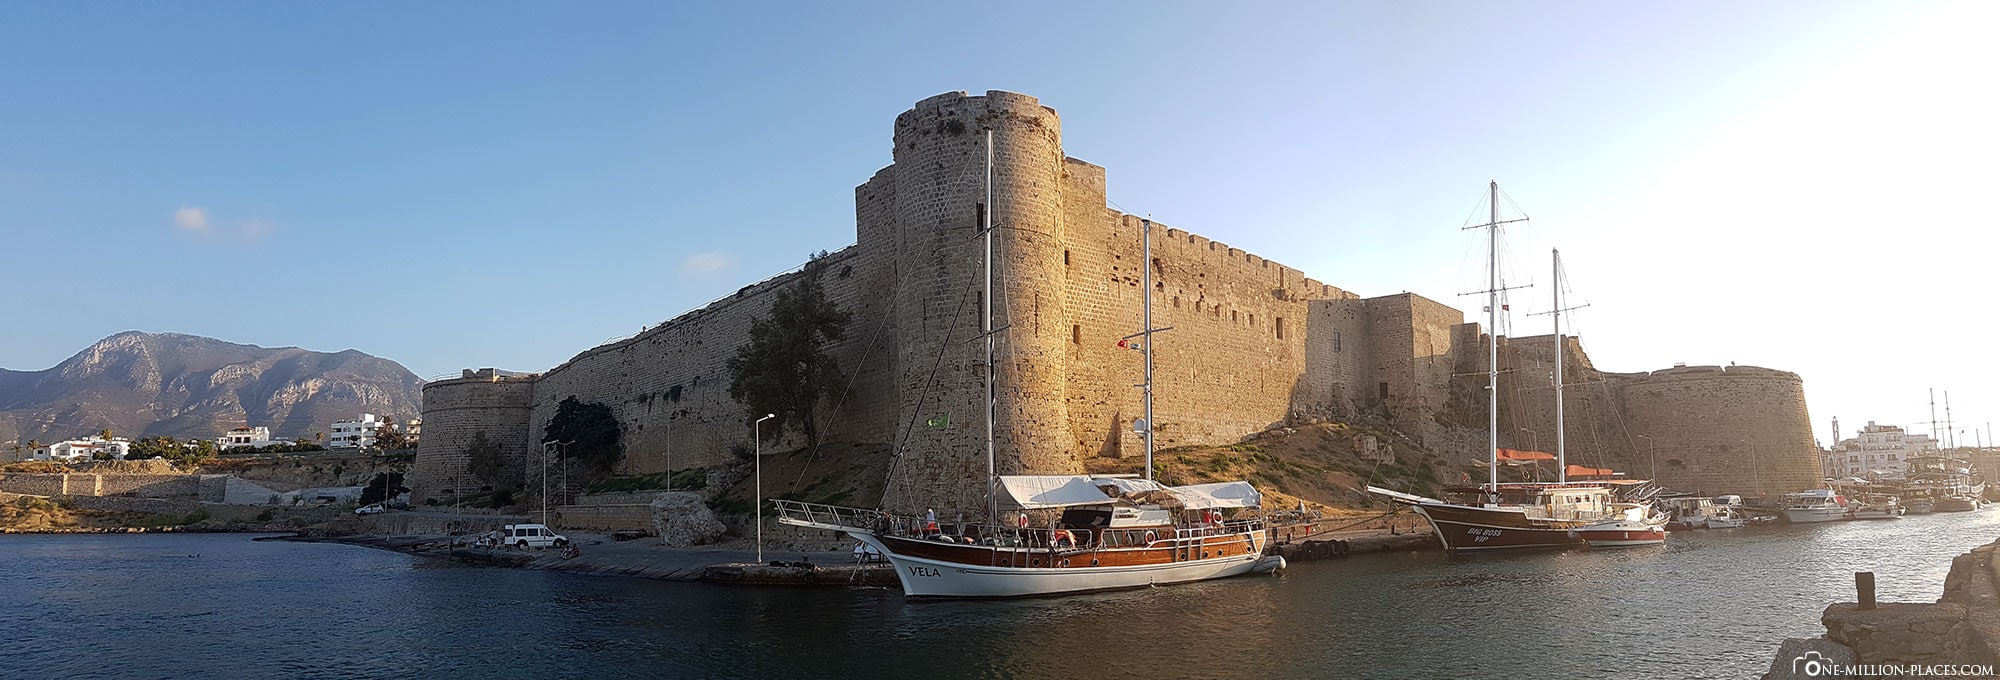 Panoramabild der Festung von Kyrenia, Zypern, Nordzypern, Sehenswürdigkeiten, Reisebericht